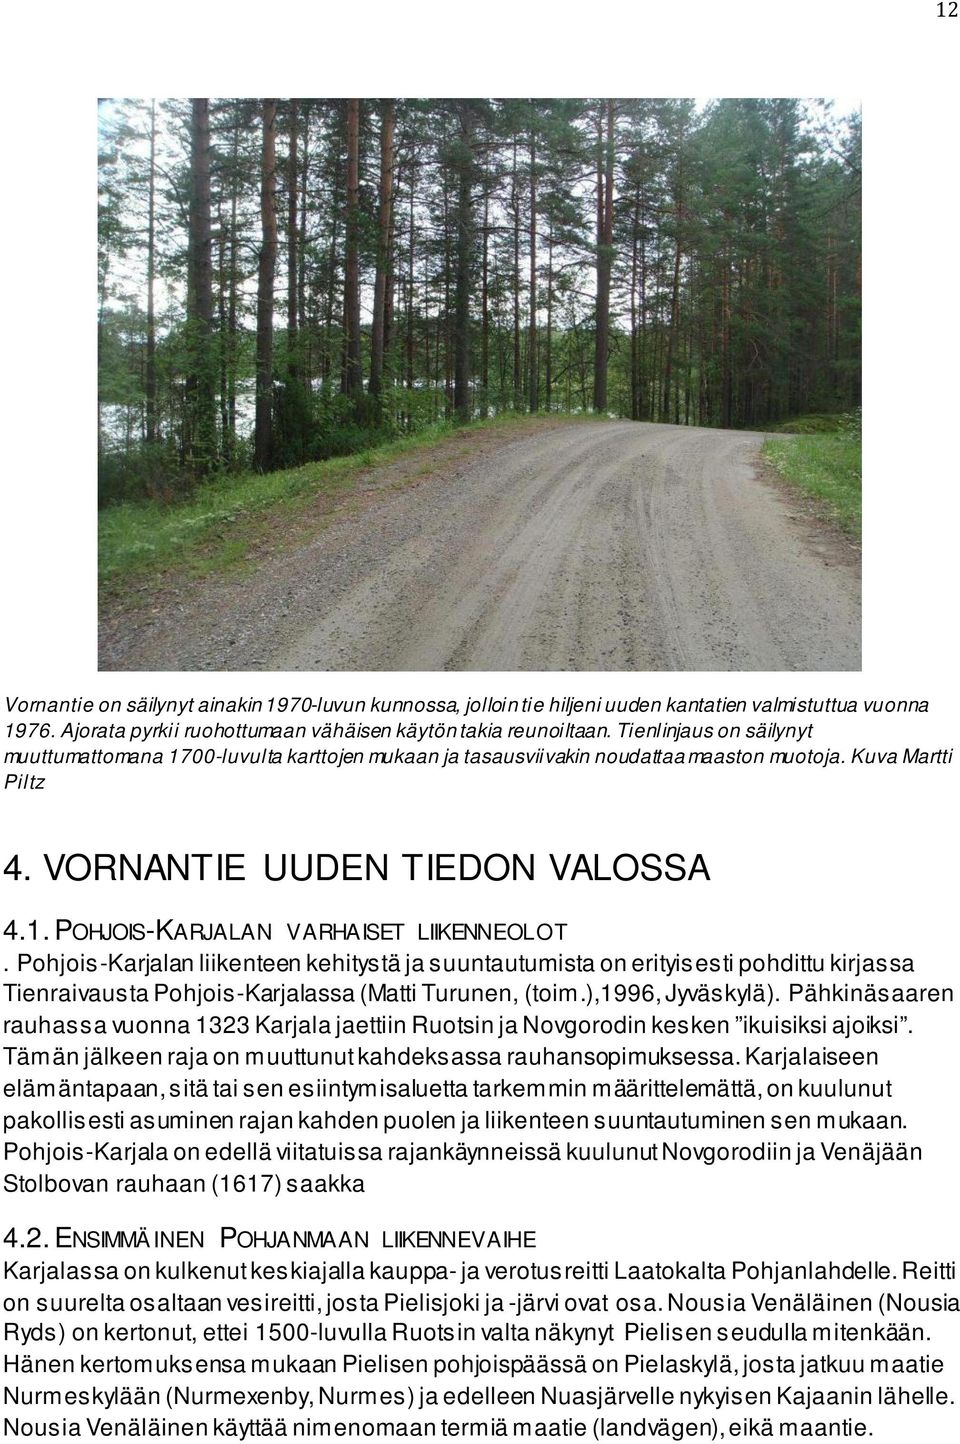 Pohjois-Karjalan liikenteen kehitystä ja suuntautumista on erityisesti pohdittu kirjassa Tienraivausta Pohjois-Karjalassa (Matti Turunen, (toim.),1996, Jyväskylä).